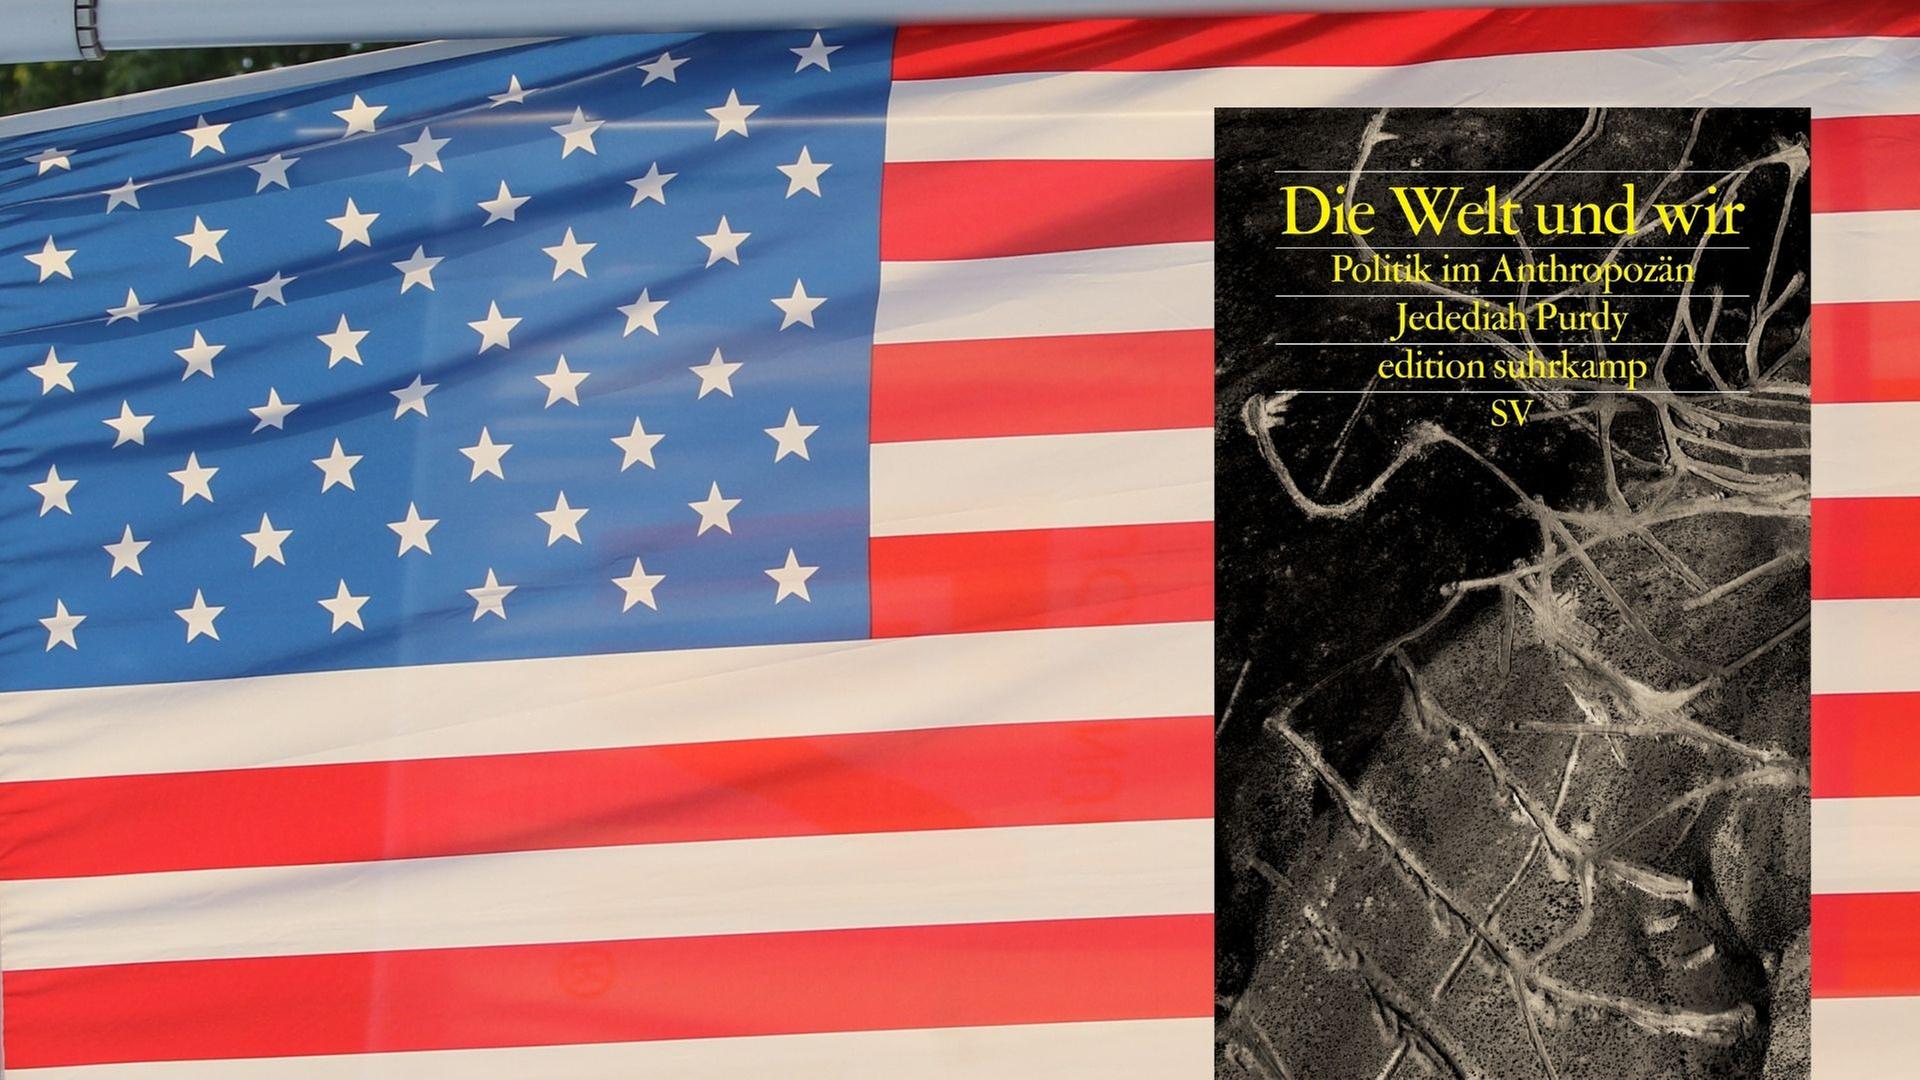 Buchcover: Jedediah Purdy: „Die Welt und wir - Politik im Anthropozän“